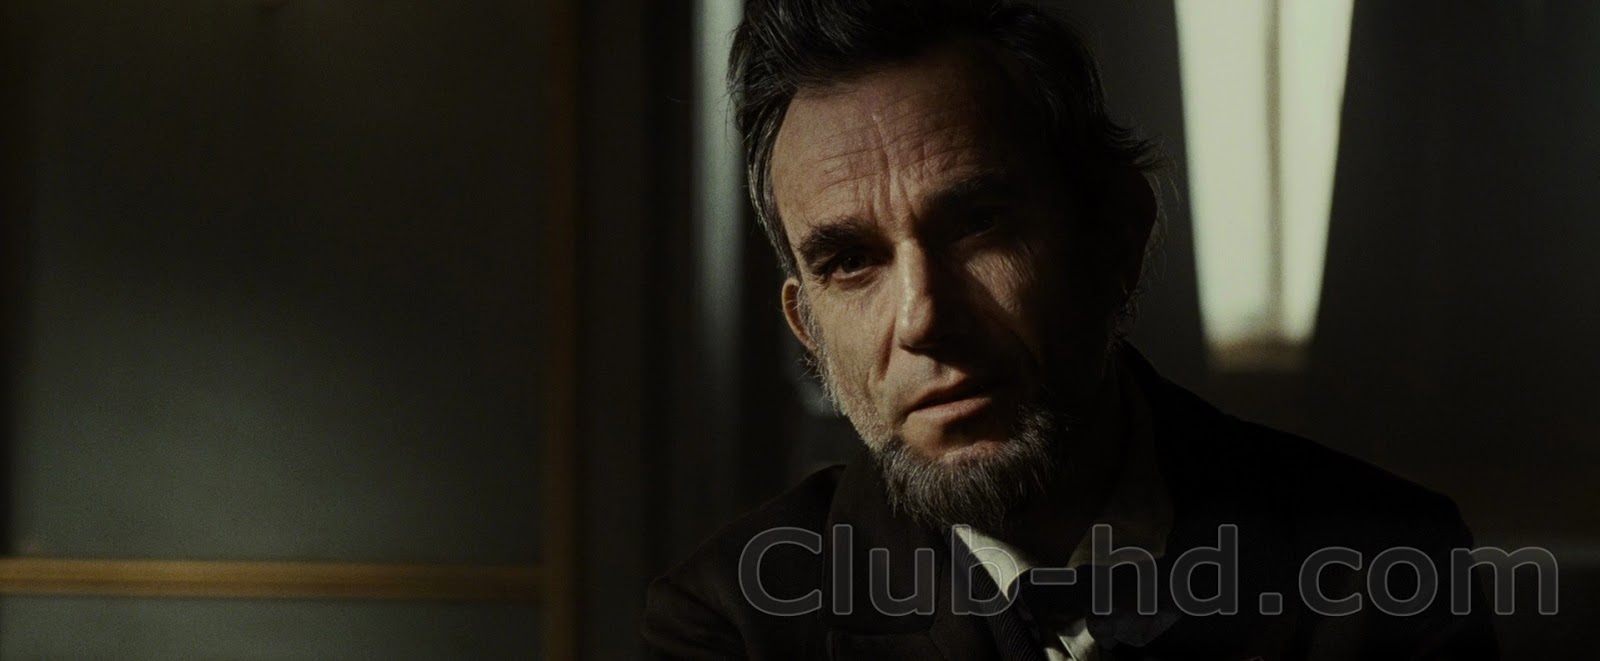 Lincoln (2012) 1080p BDRip Dual Latino-Inglés [Subt. Esp-Ing] (Drama)